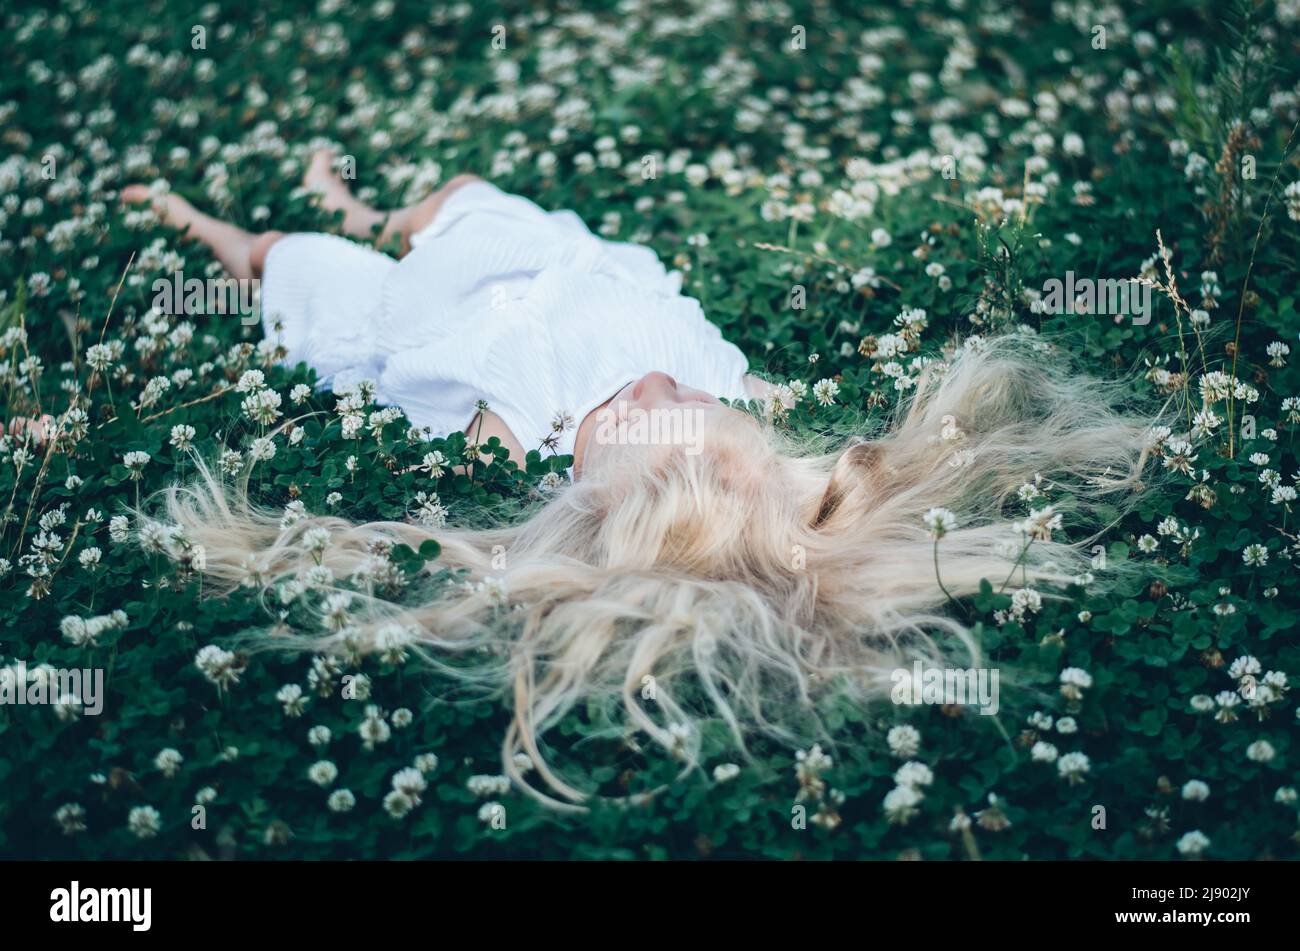 ragazza con capelli biondi lunghi giacenti in erba trifoglio verde con piccoli fiori bianchi, vista dalla prospettiva degli uccelli Foto Stock